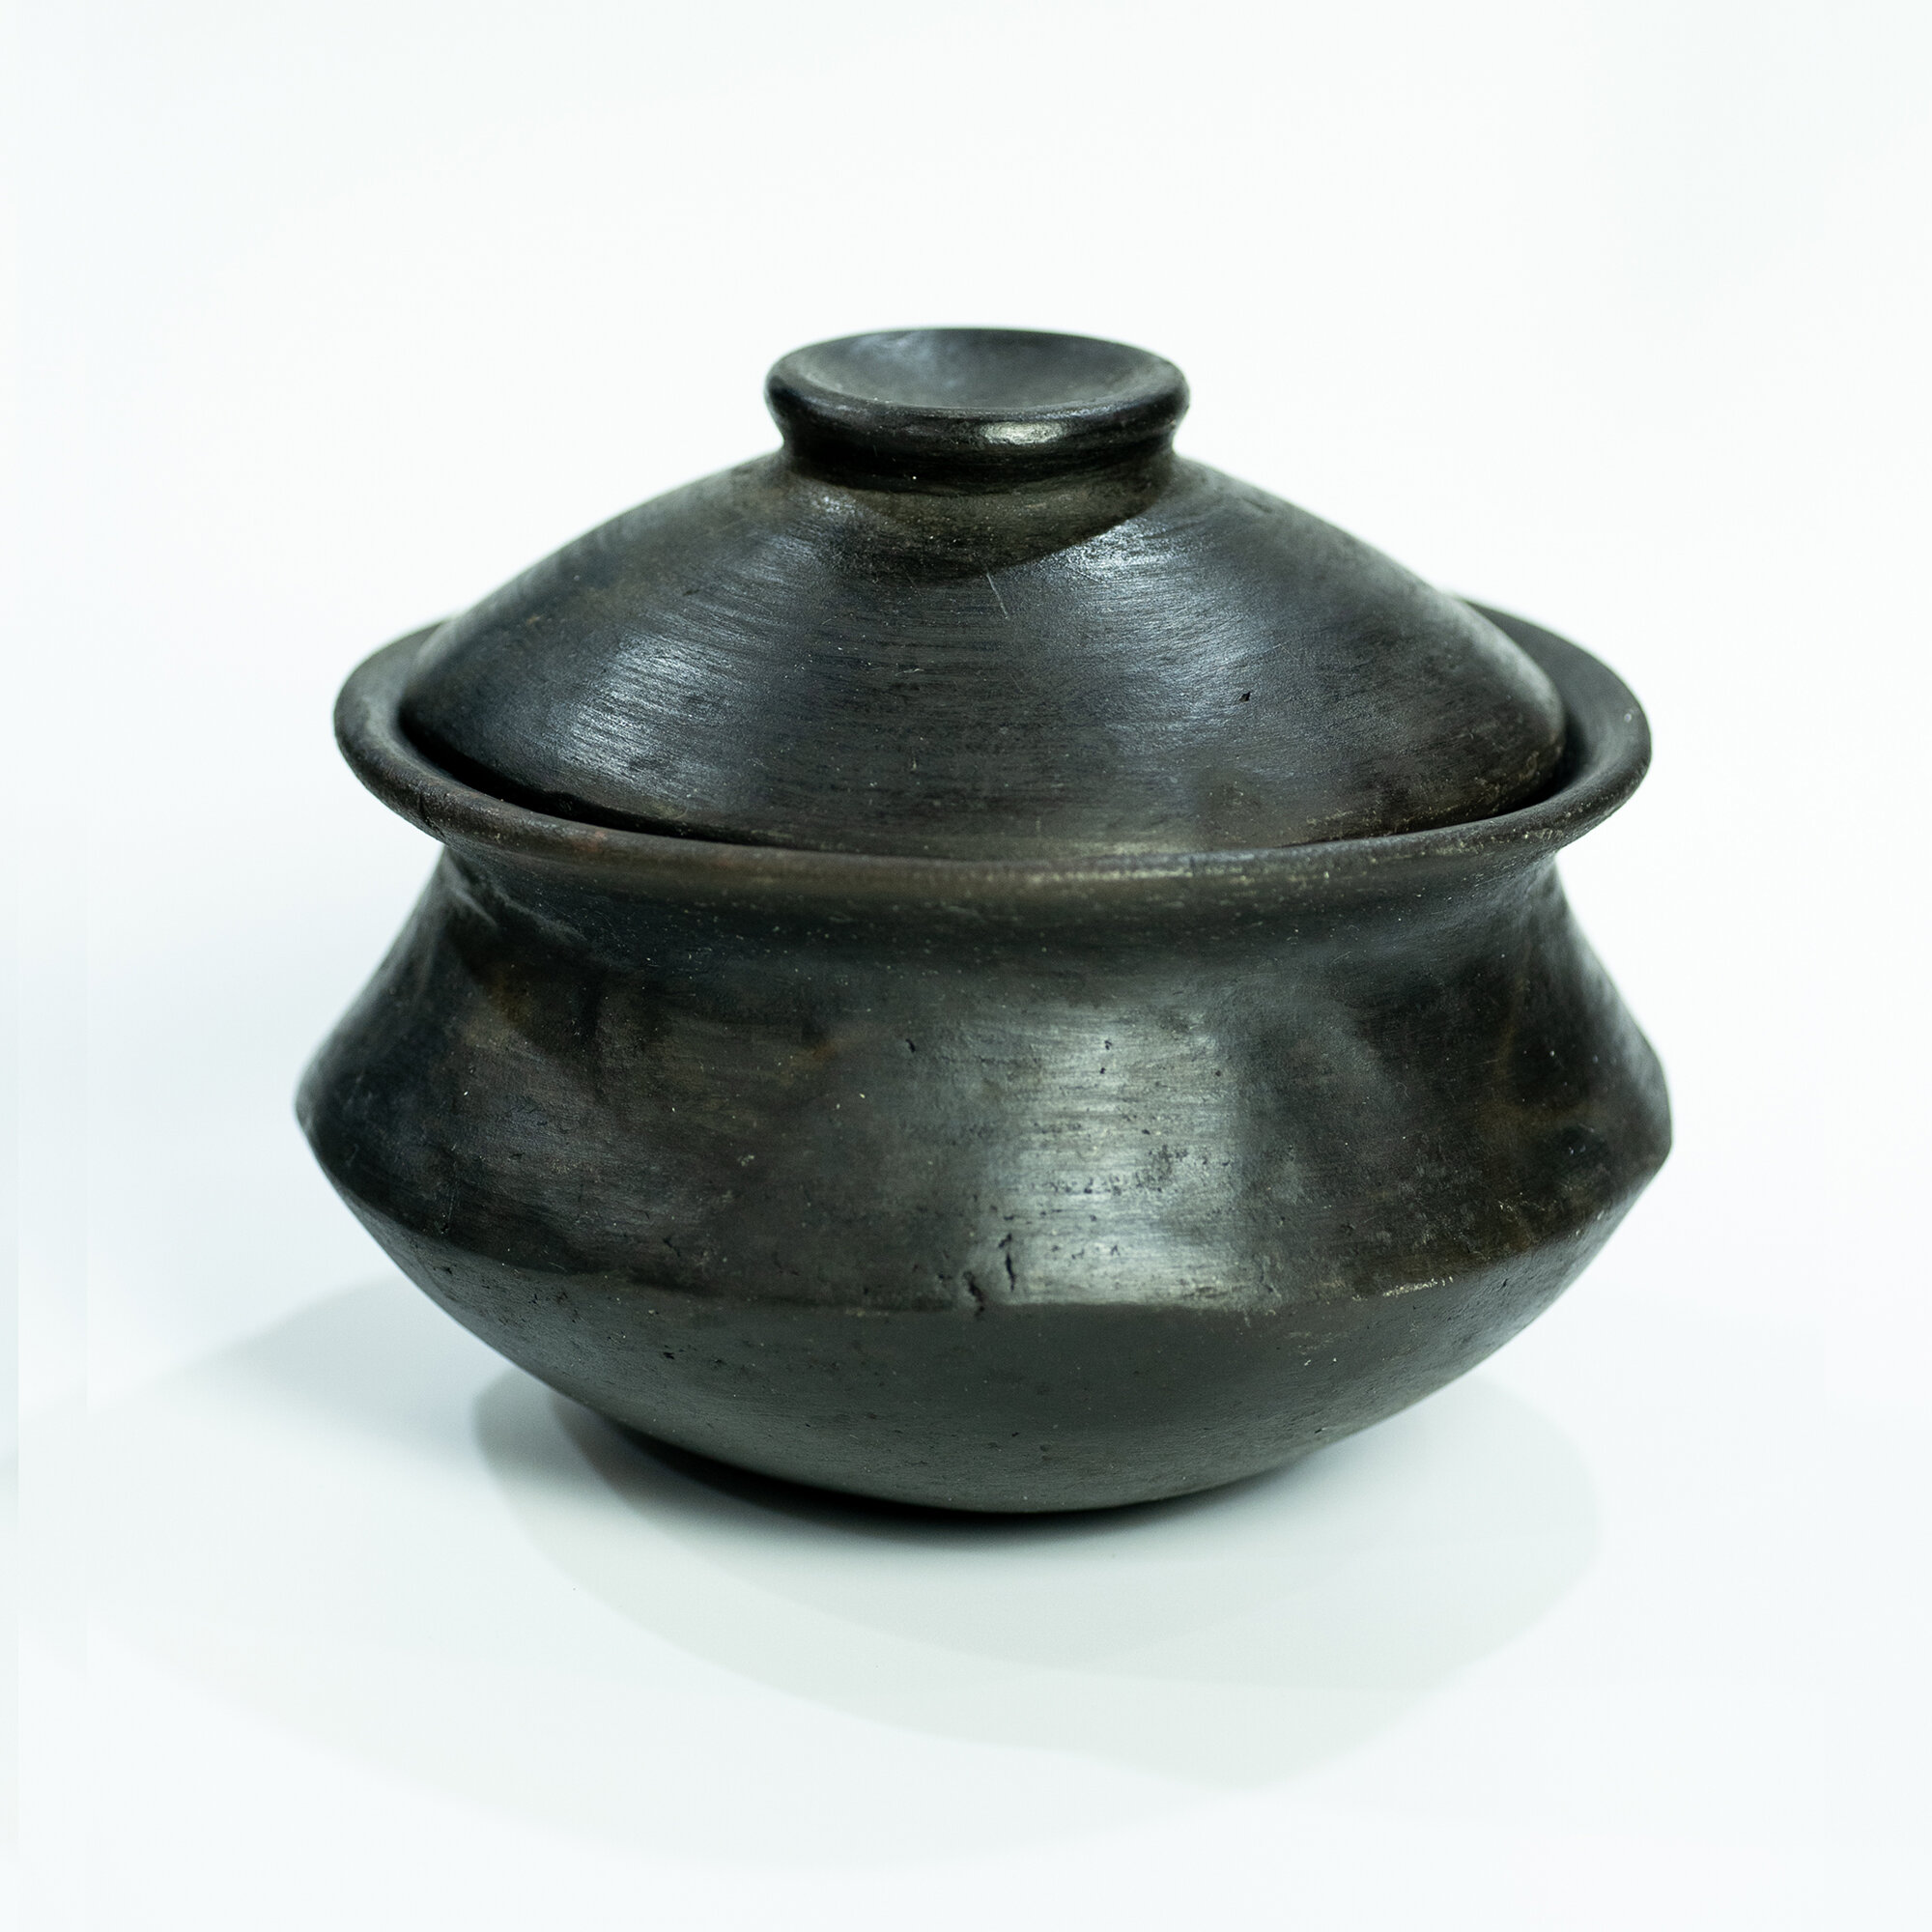 https://assets.wfcdn.com/im/28780303/compr-r85/1487/148742010/ancient-cookware-earthenware-soup-pot.jpg